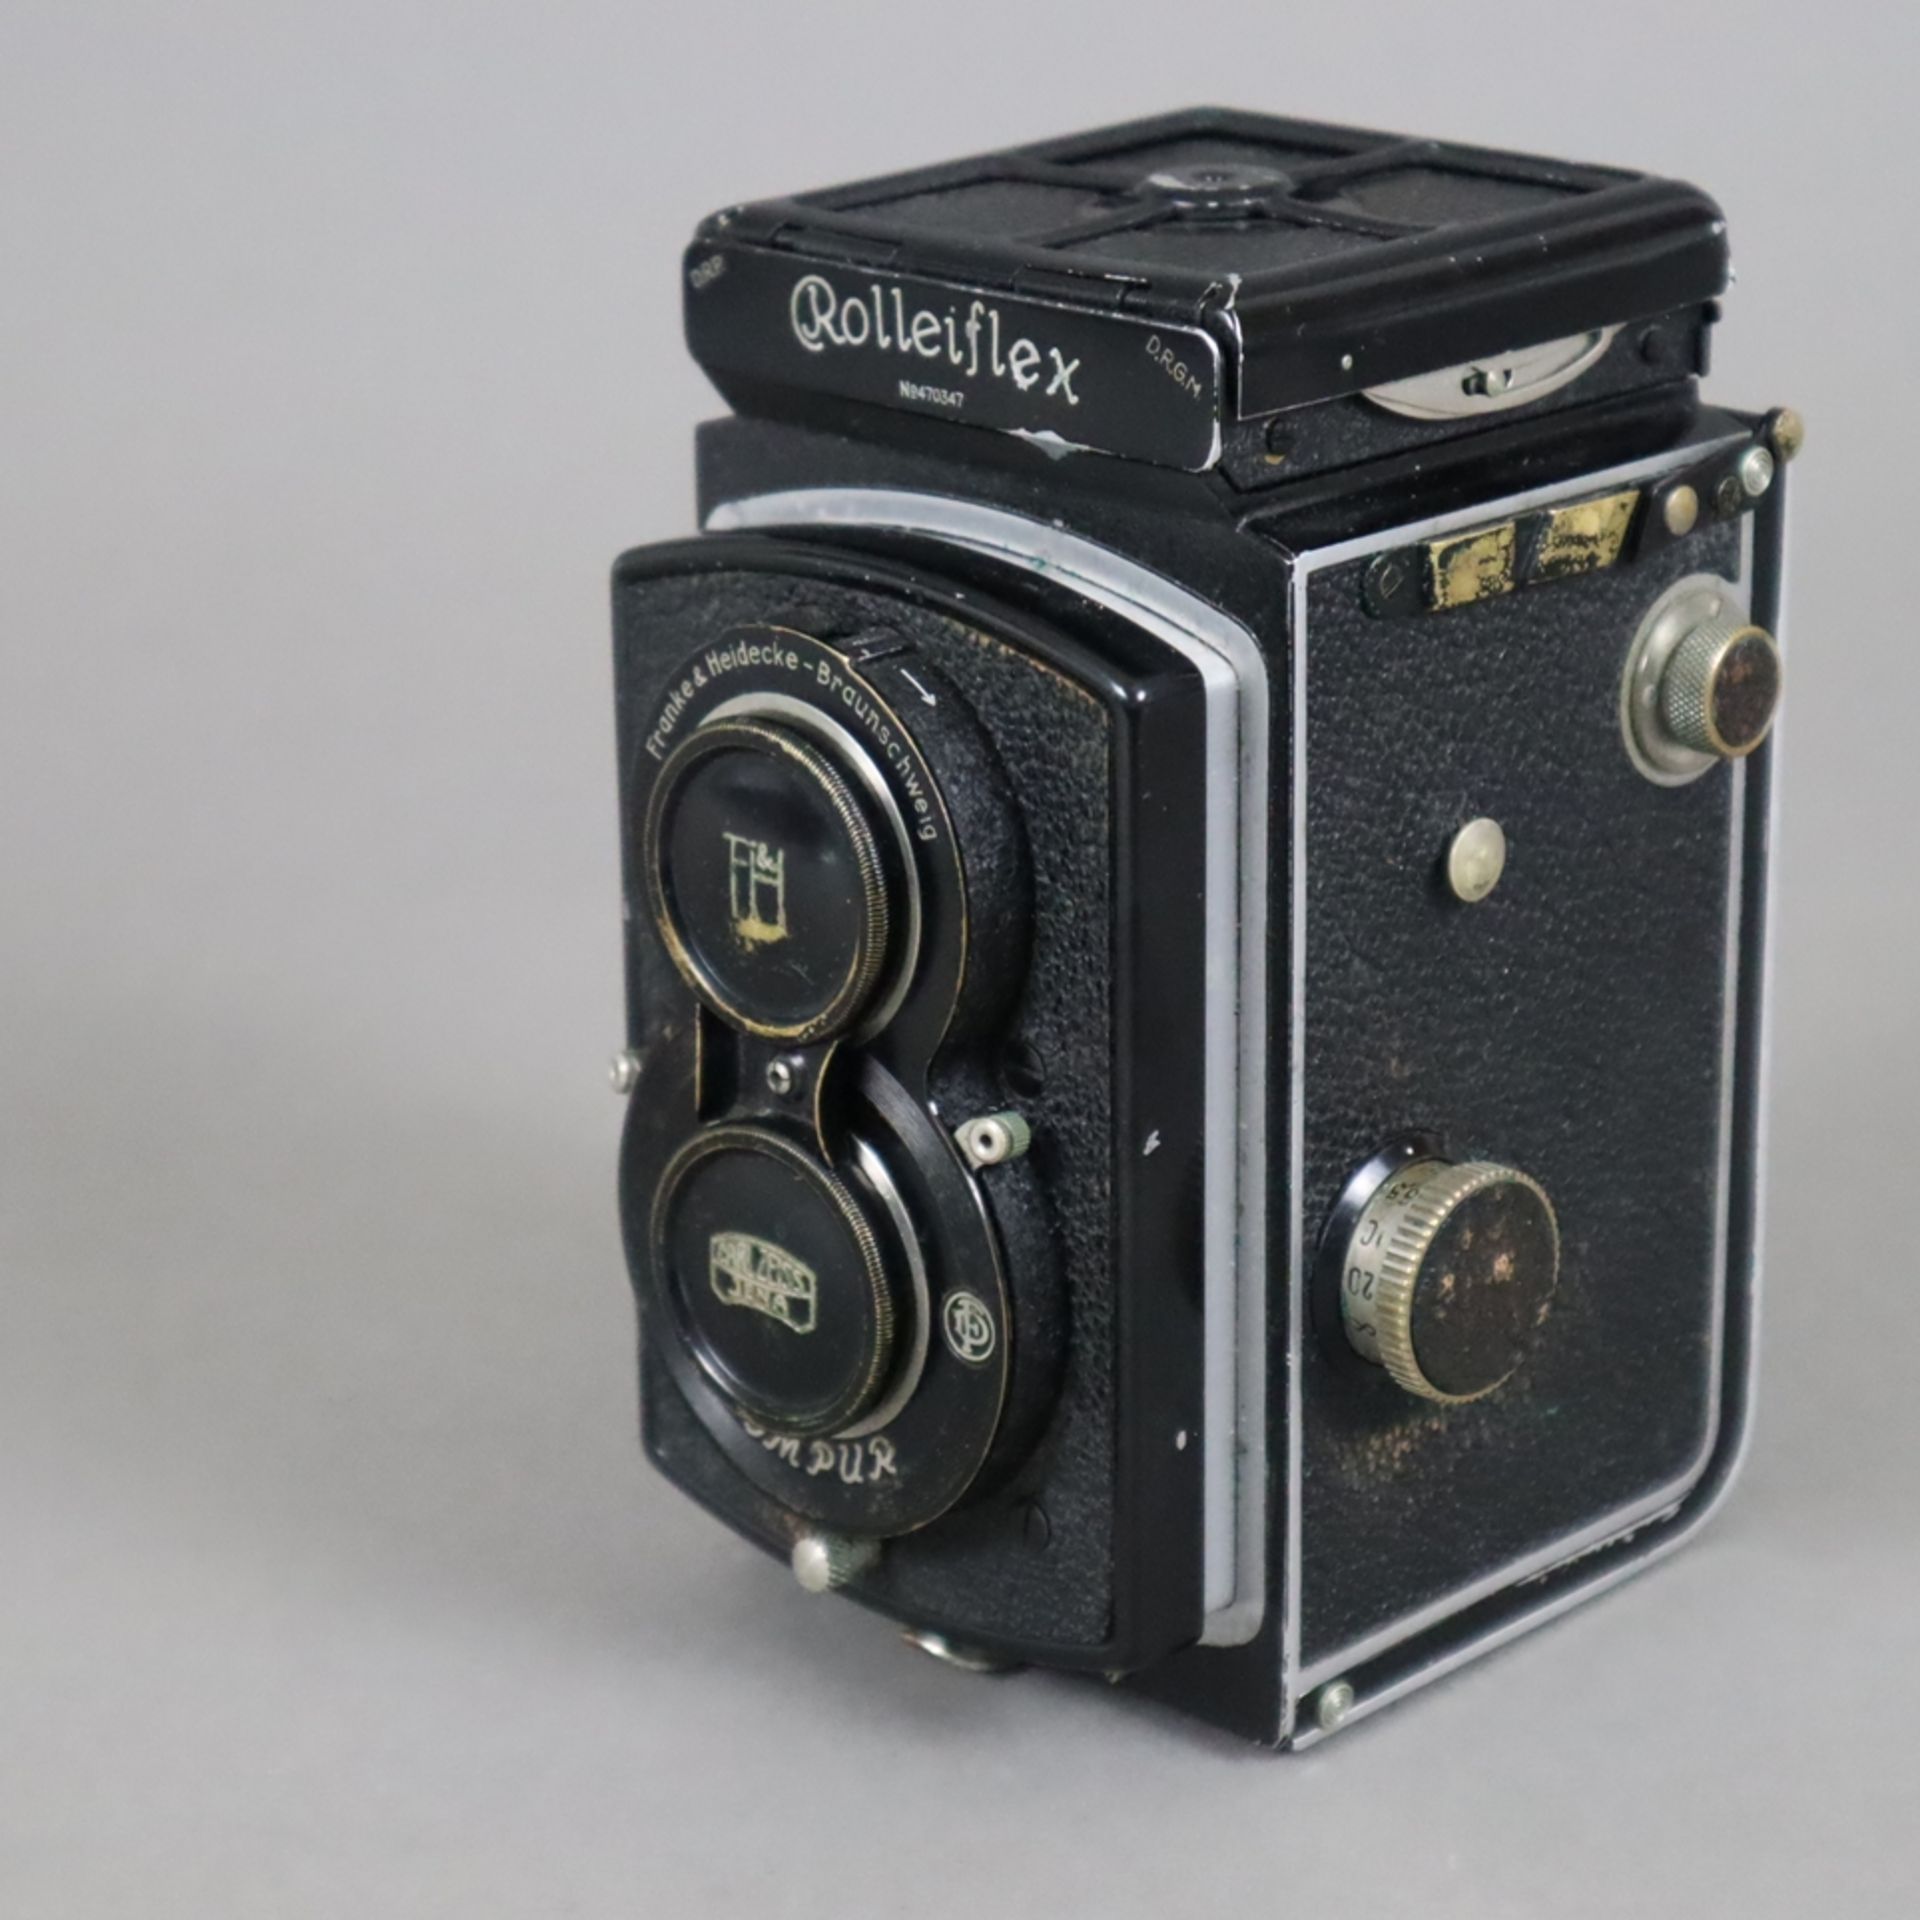 Spiegelreflexkamera Rolleiflex - Compur, Franke & Heidecke, Braunschweig, schwarzes Gehäuse Nr. 470 - Image 2 of 5